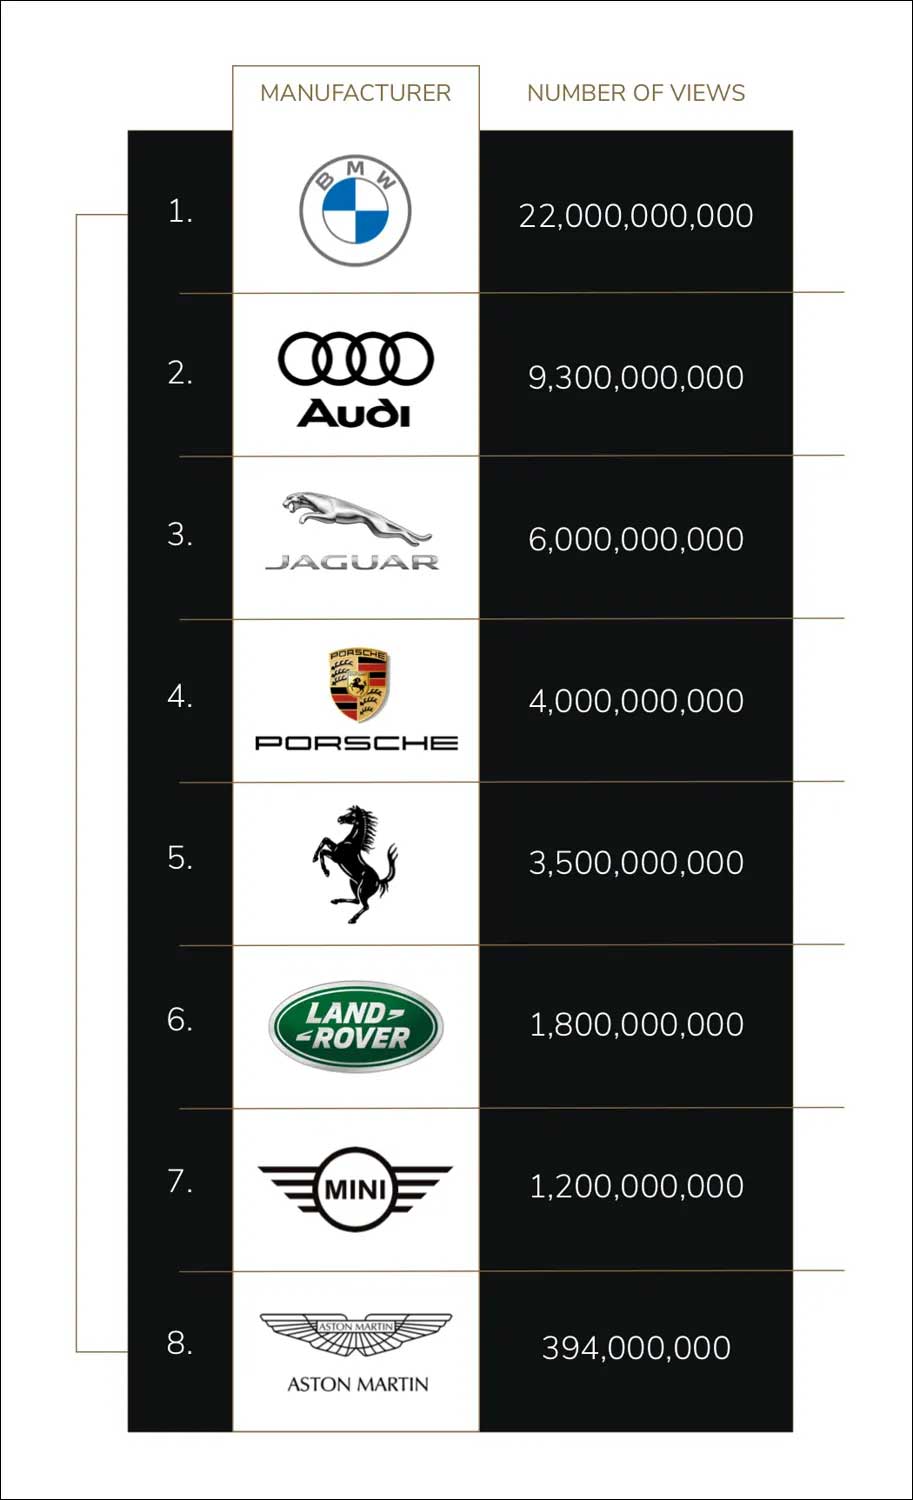 Tiktokで最も見られている車メーカーはbmw ポルシェは4位